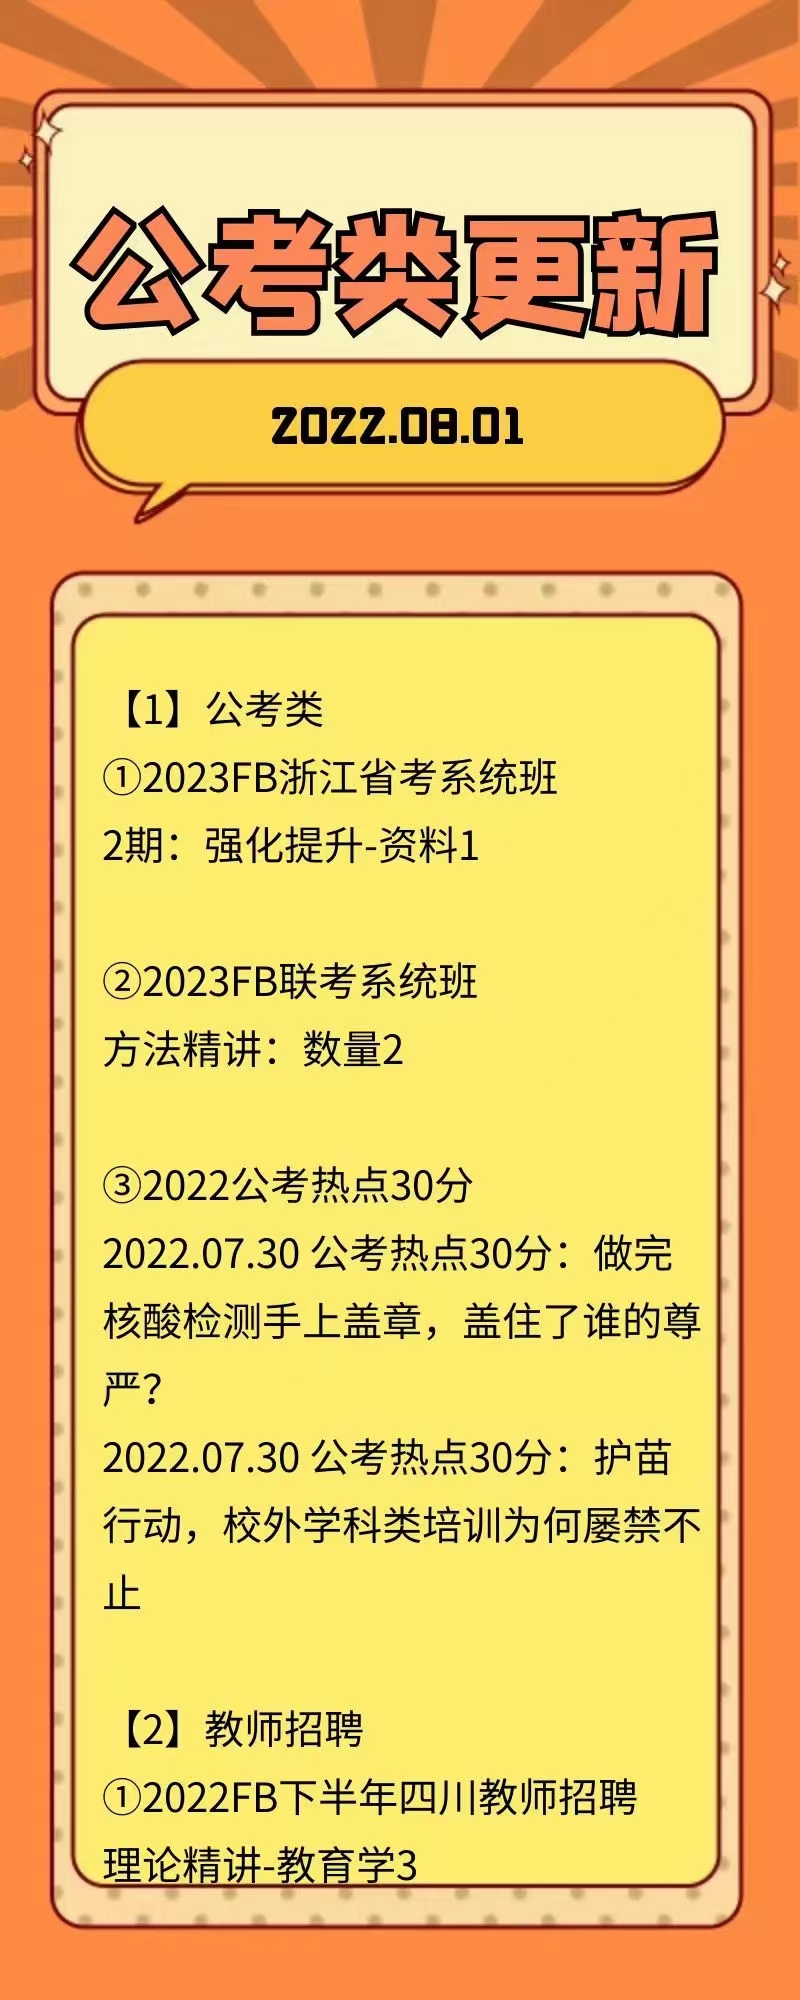 萌学院区08月01号更新 公务员 事业单位2022 教师招聘